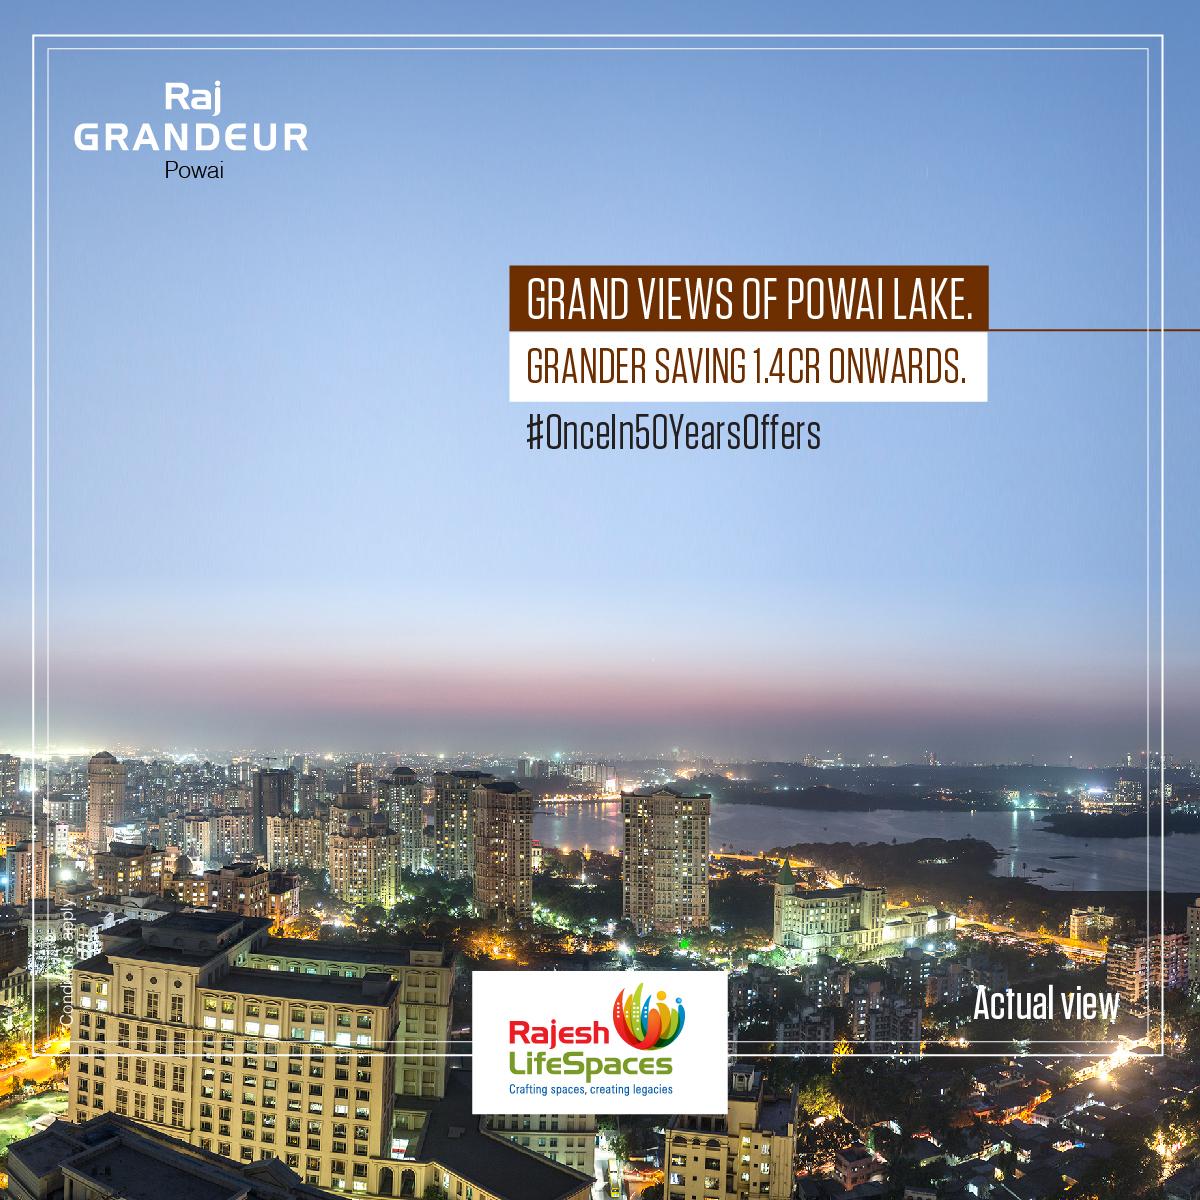 Grand Views of Powai Lake Grander Saving 1.4 Cr. Onwards at Raj Grandeur, Powai, Mumbai